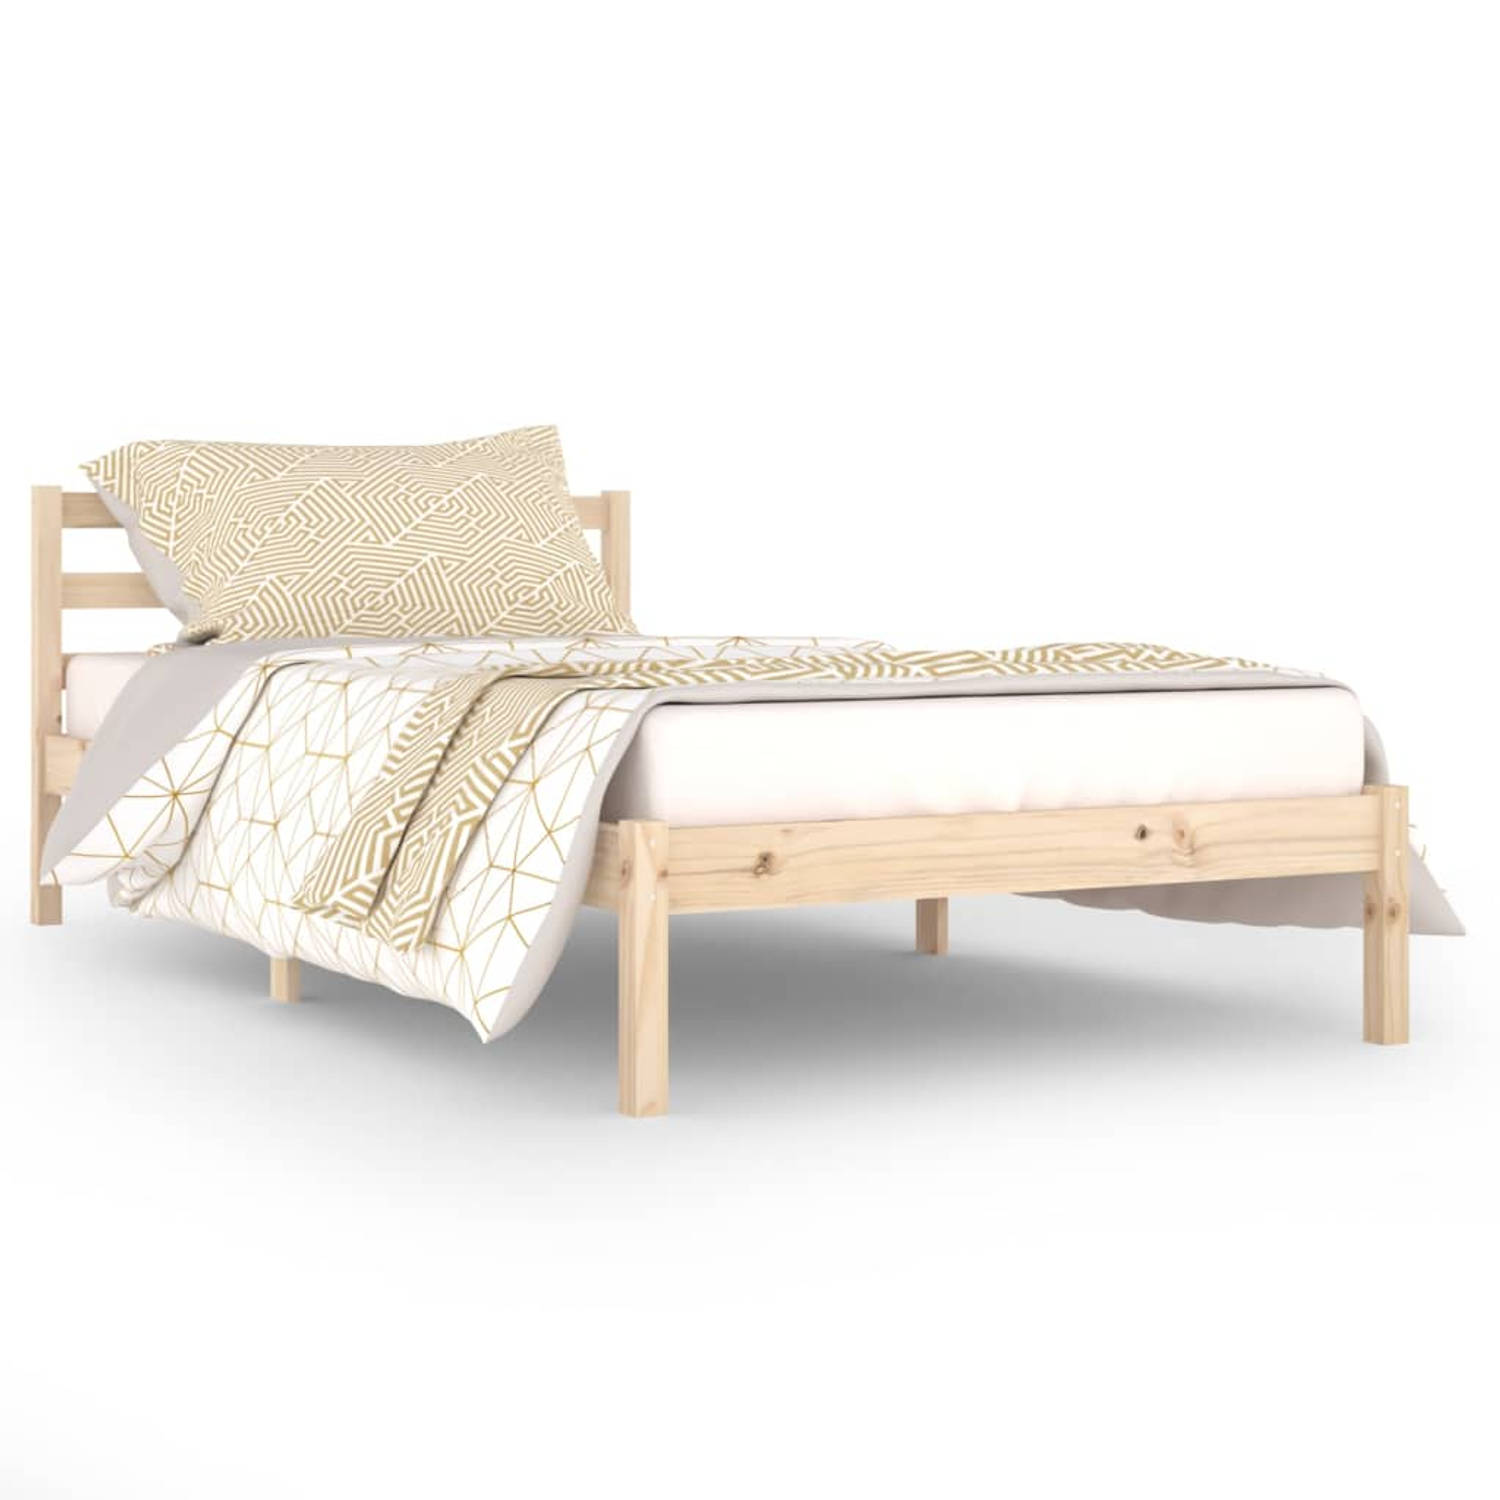 The Living Store Bedframe massief grenenhout 100x200 cm - Bedframe - Bedframes - Bed - Bedbodem - Ledikant - Bed Frame - Massief Houten Bedframe - Slaapmeubel - Bedden - Bedbodems